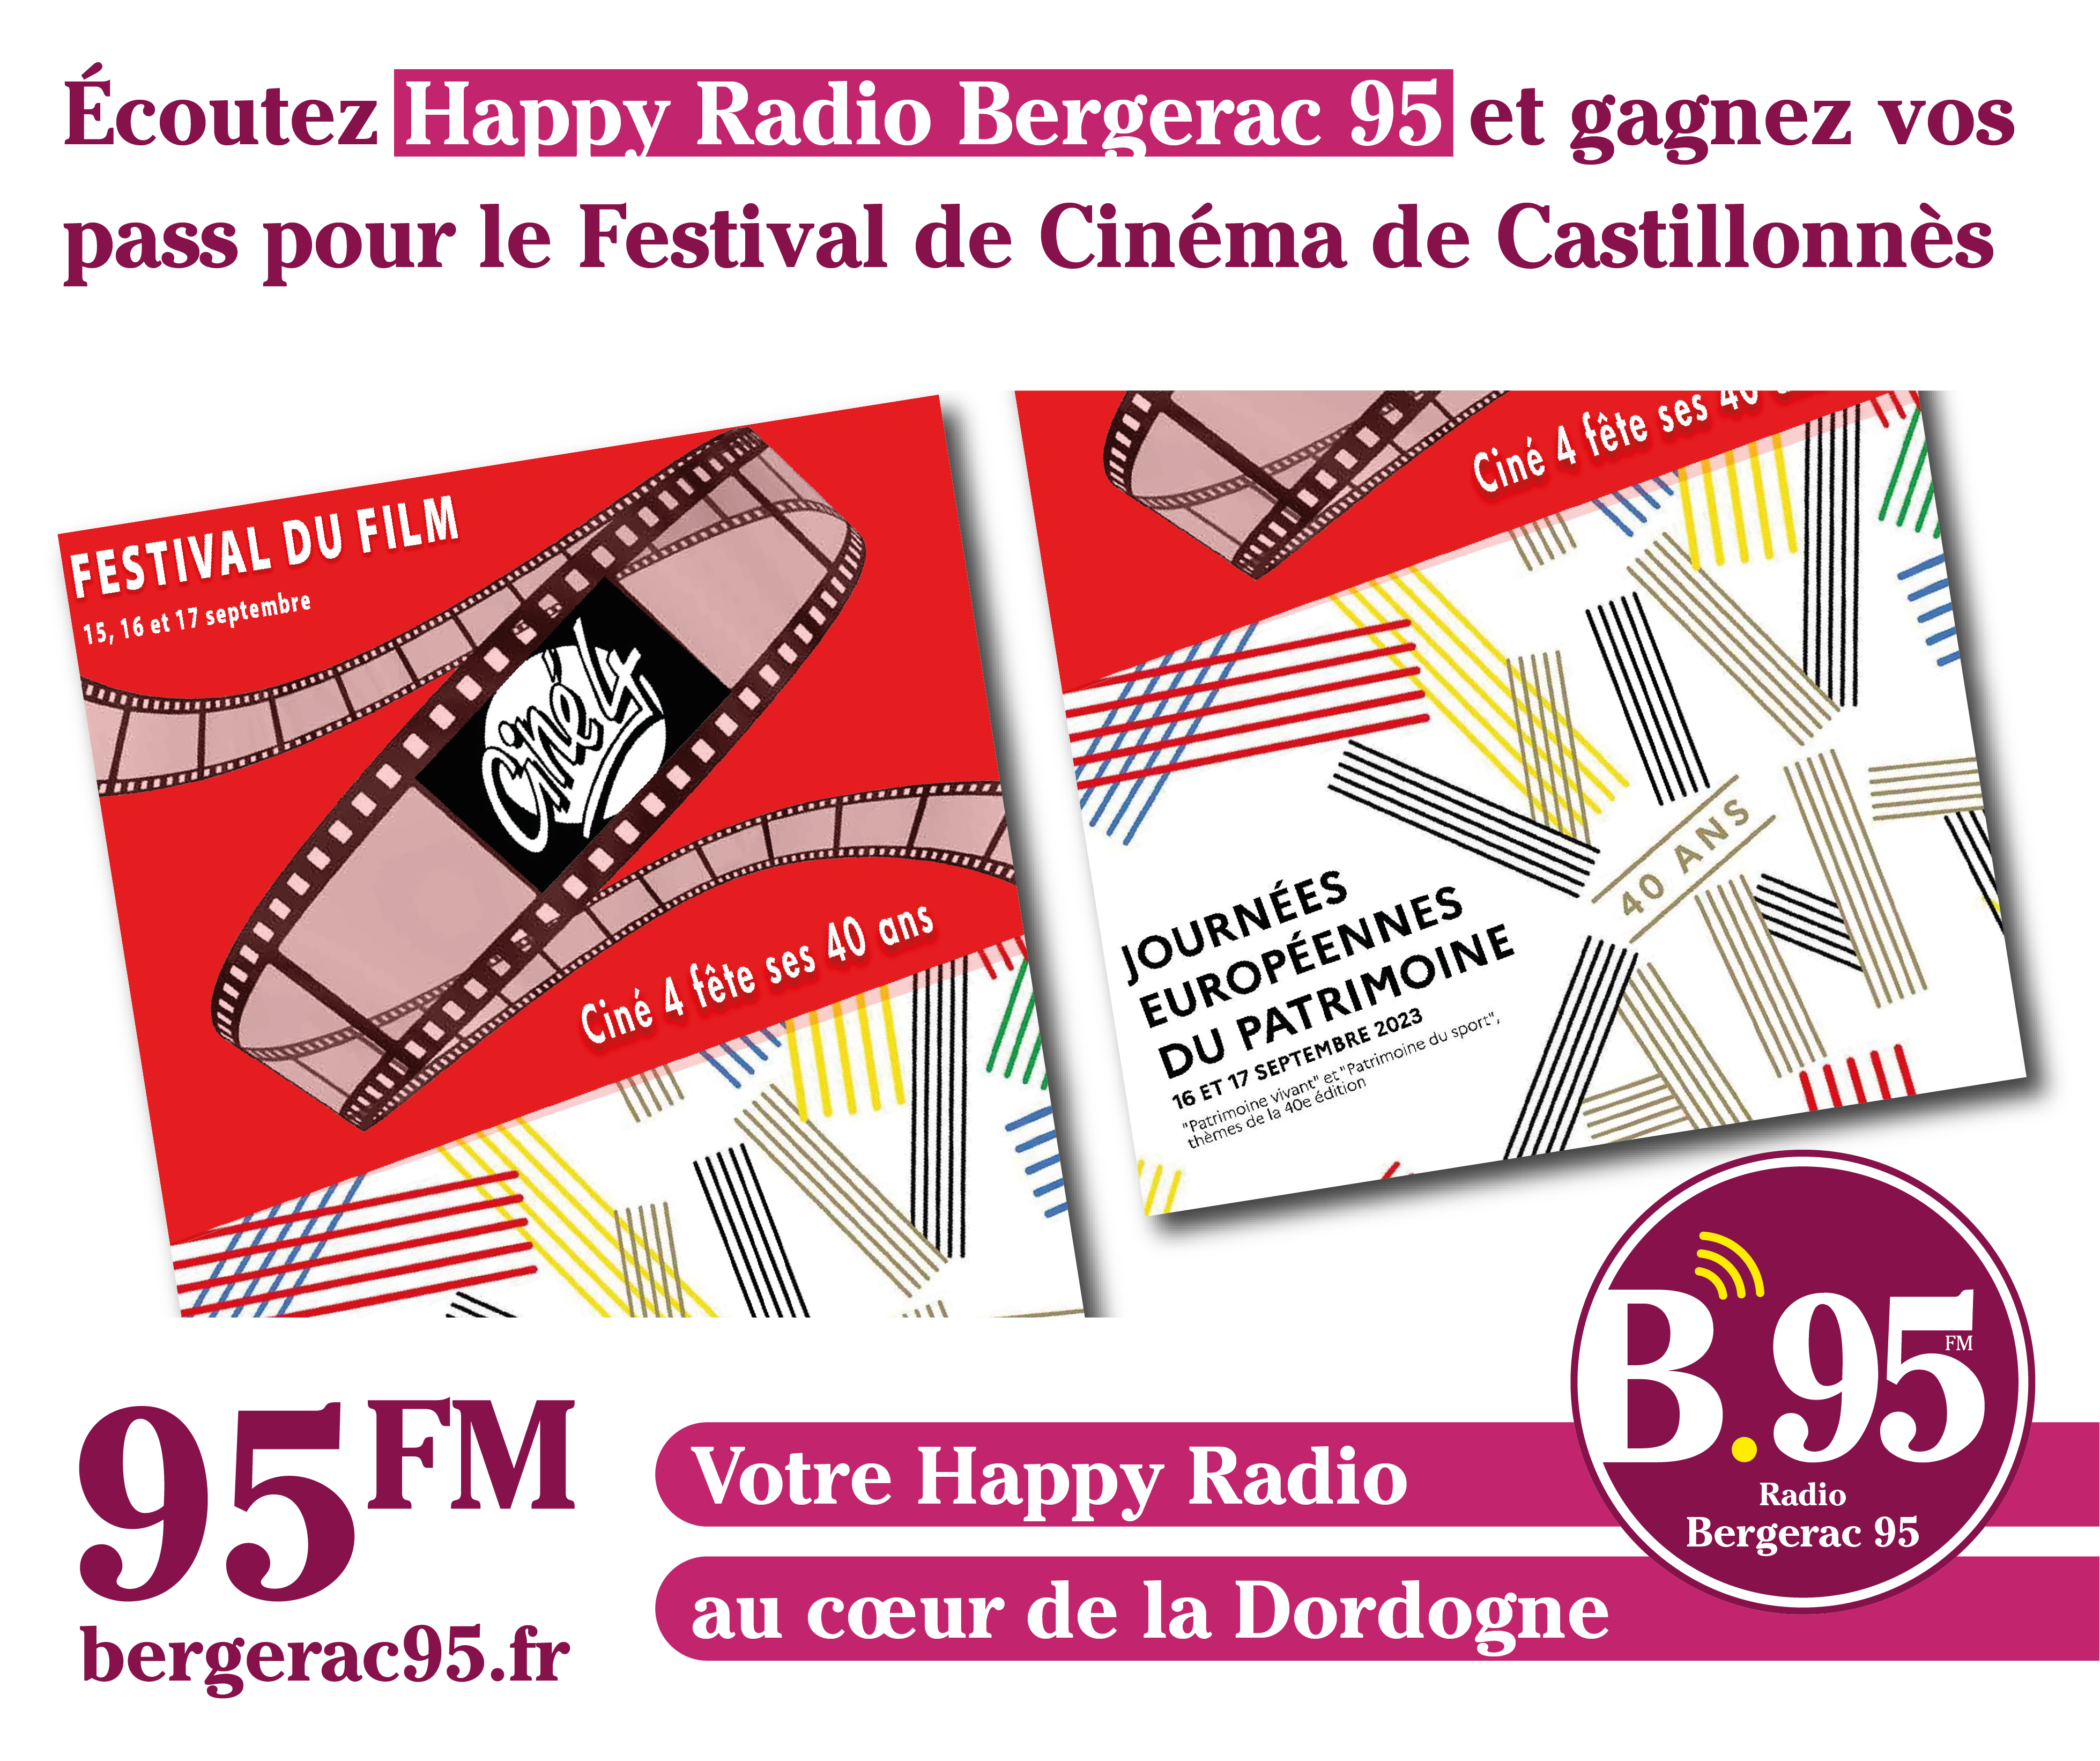 You are currently viewing Écoutez Happy Radio Bergerac et gagnez vos pass pour le festival du Cinéma de Castillonnès